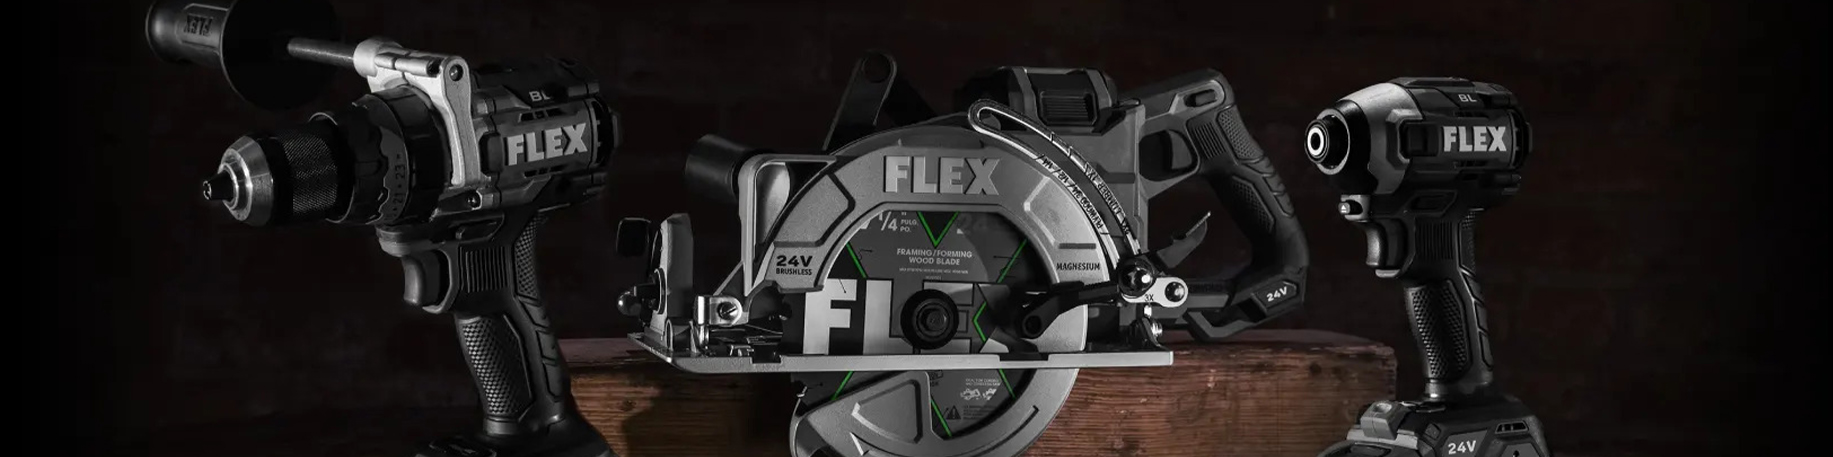 Flex-tools Accessoires 393258 Papier de verre Corkflex 125 mm K280